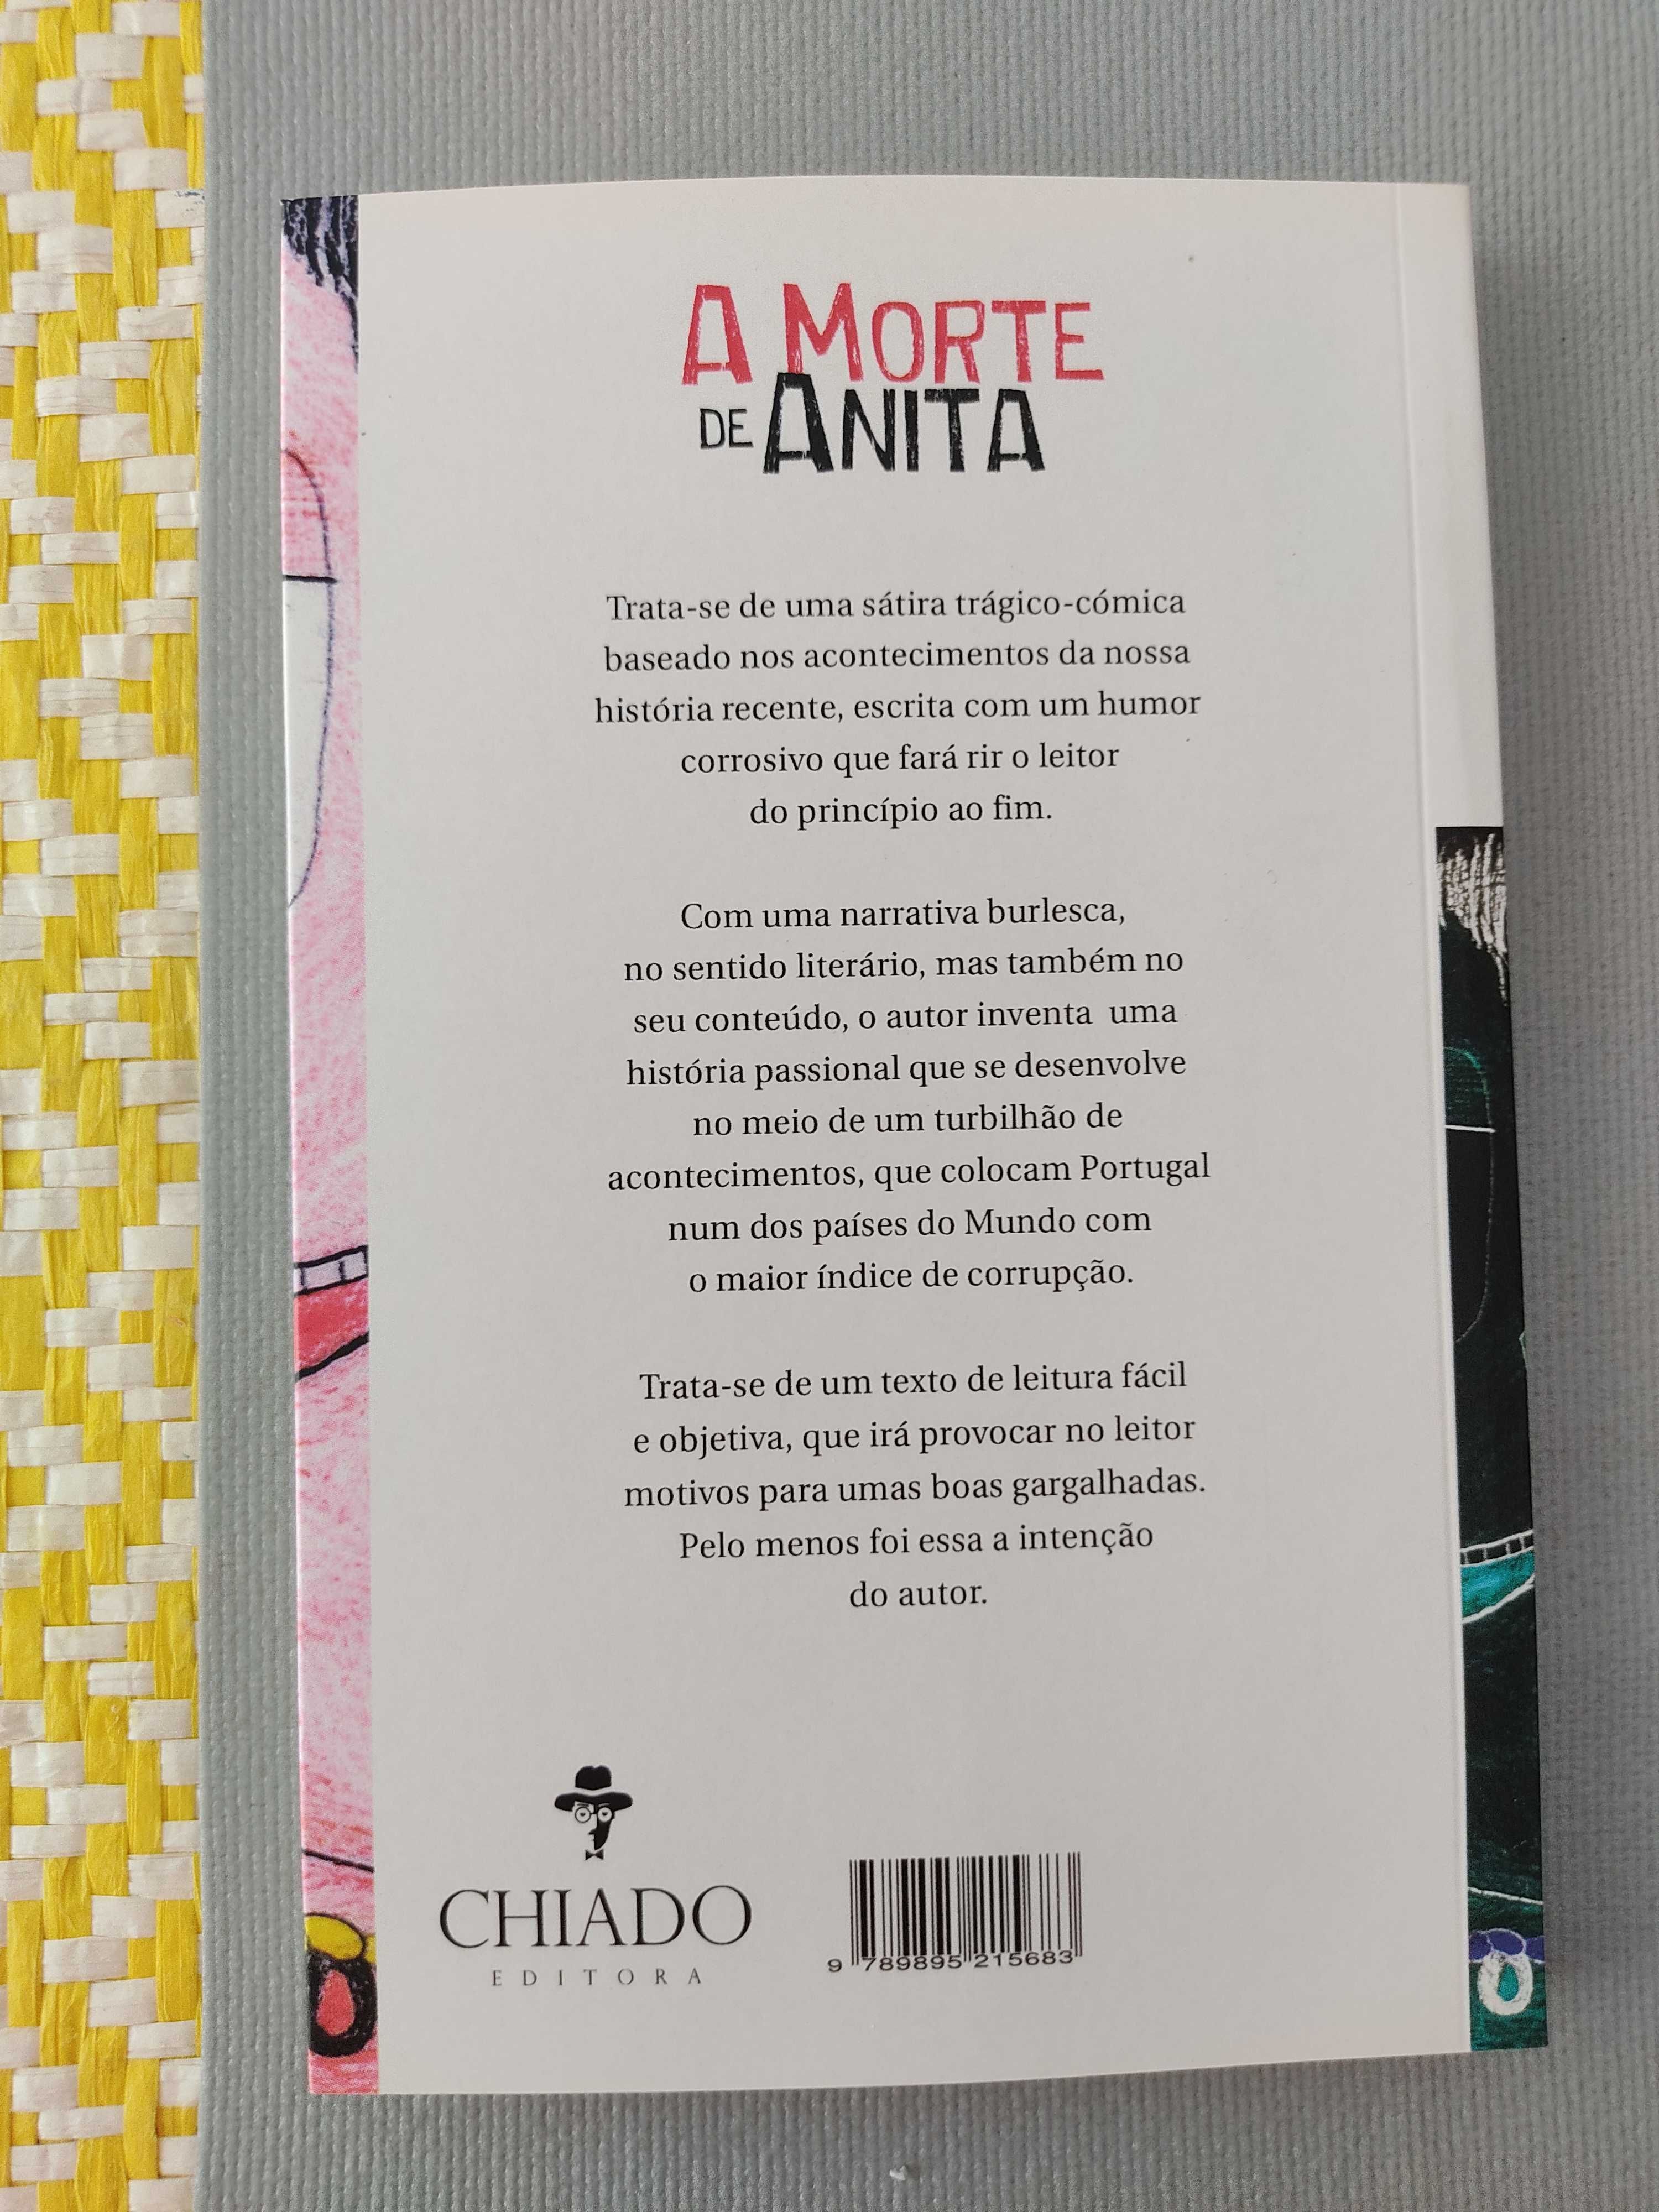 A MORTE DE ANITA
de Américo Lopes